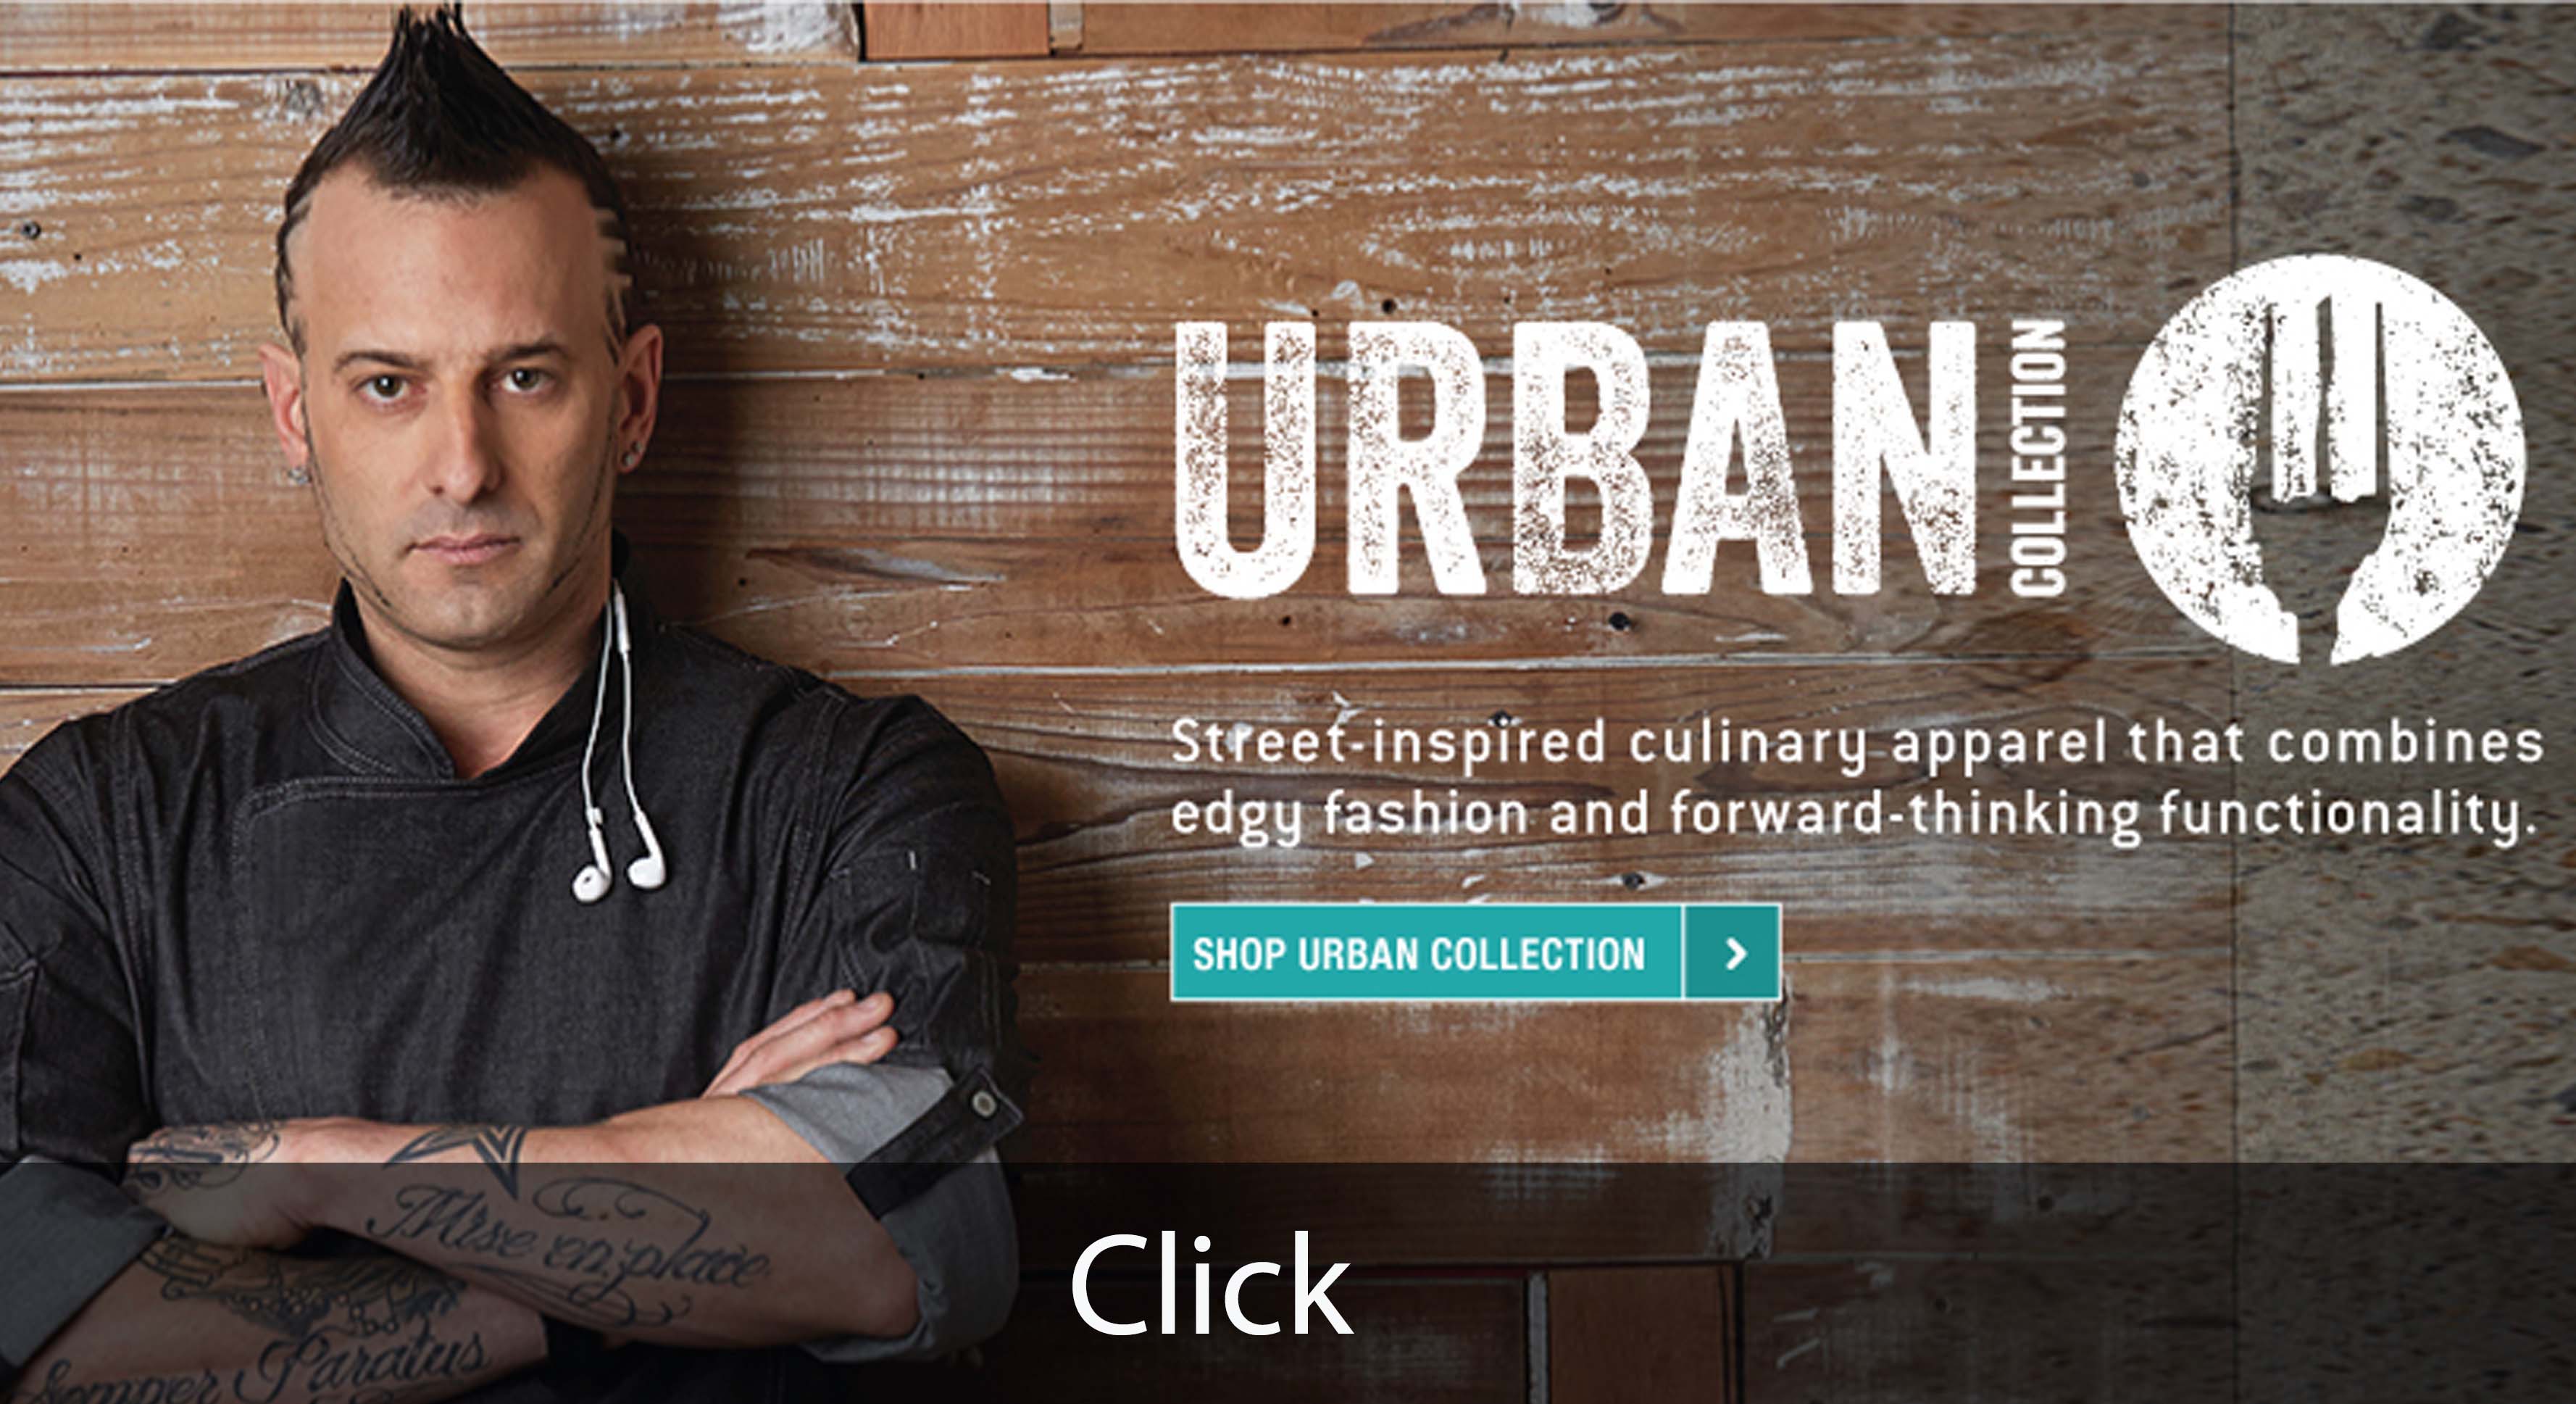 Chefworks website